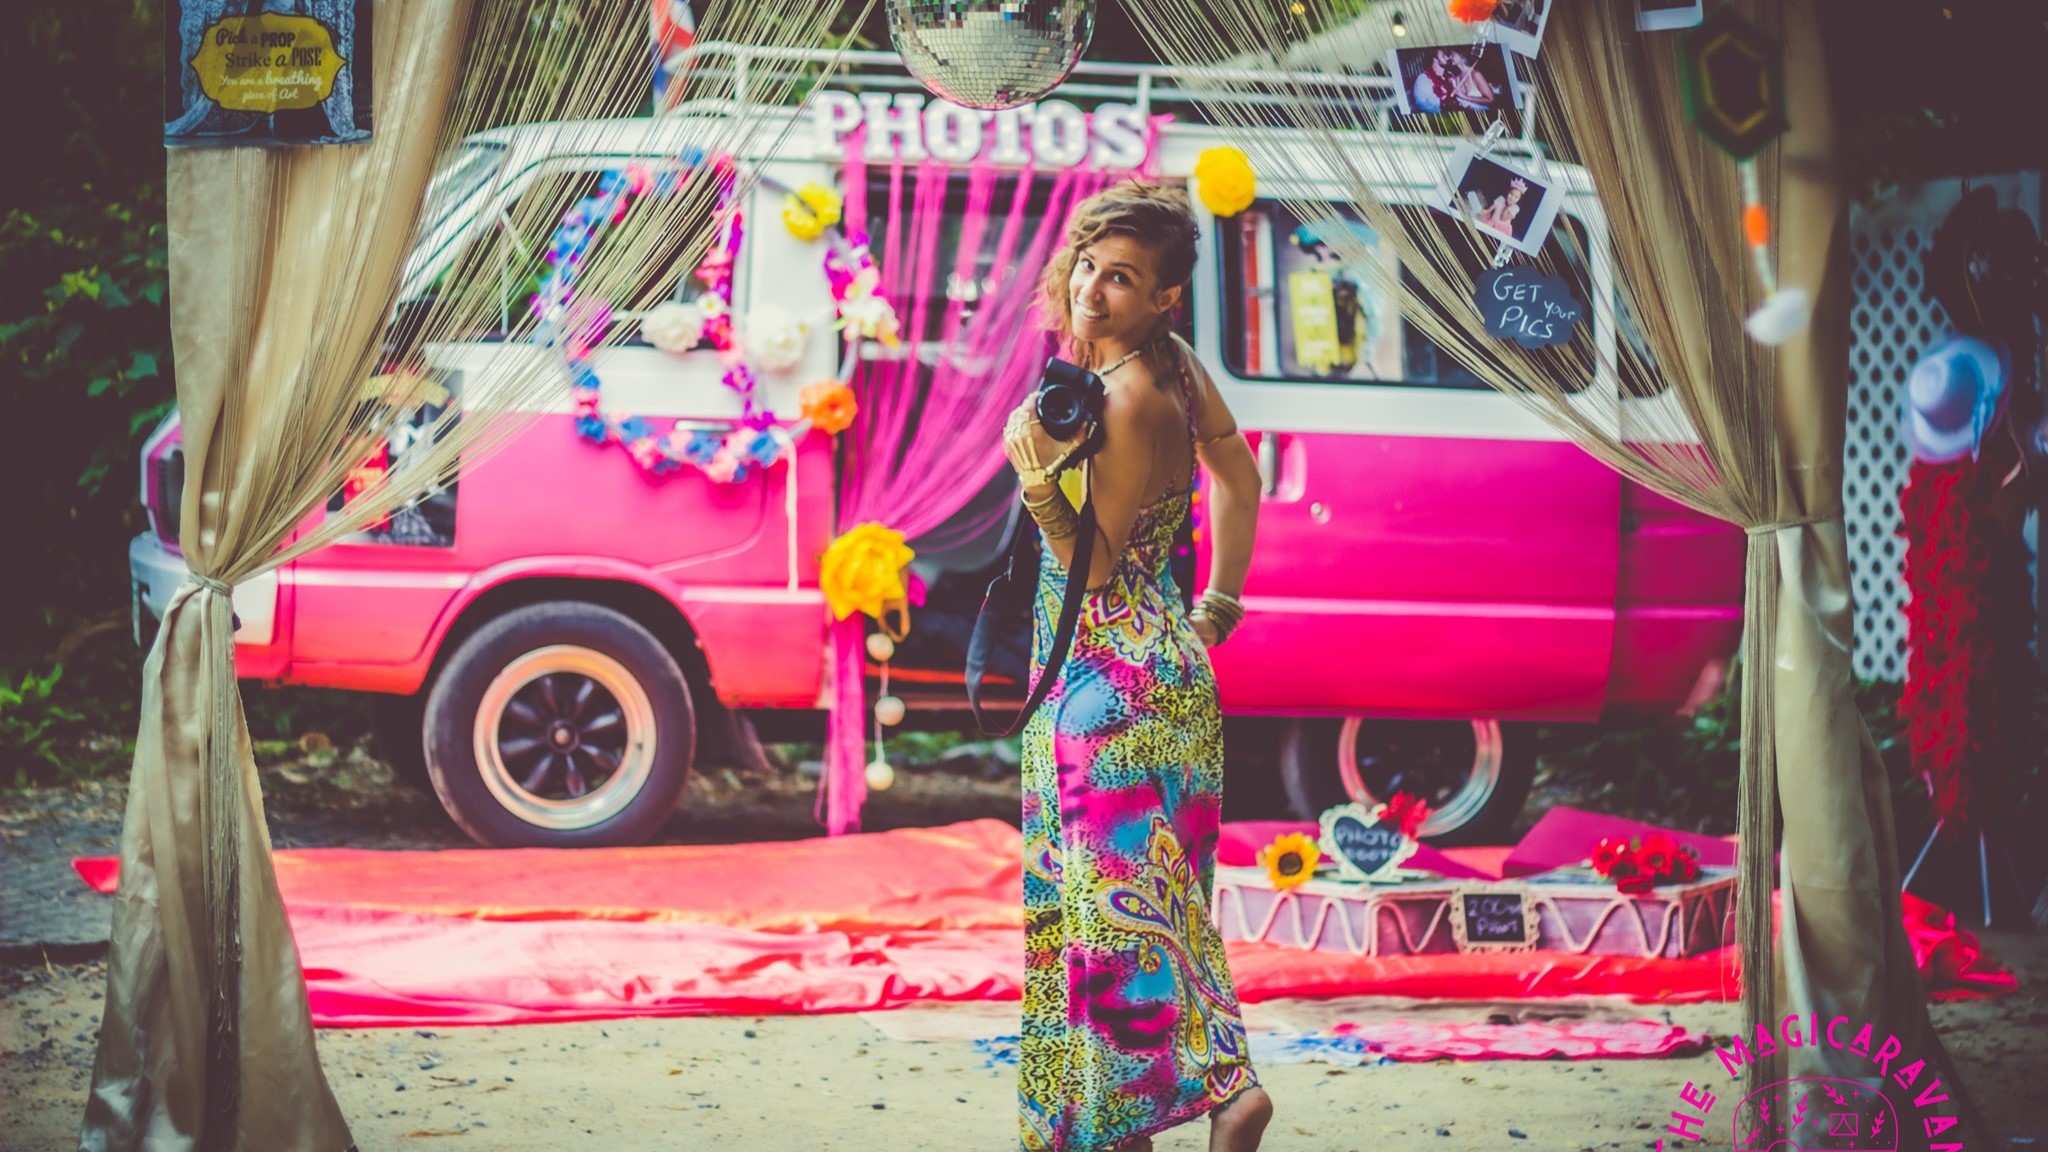 The Magicaravan Fotobooth Koh Phangan Pink Caravan